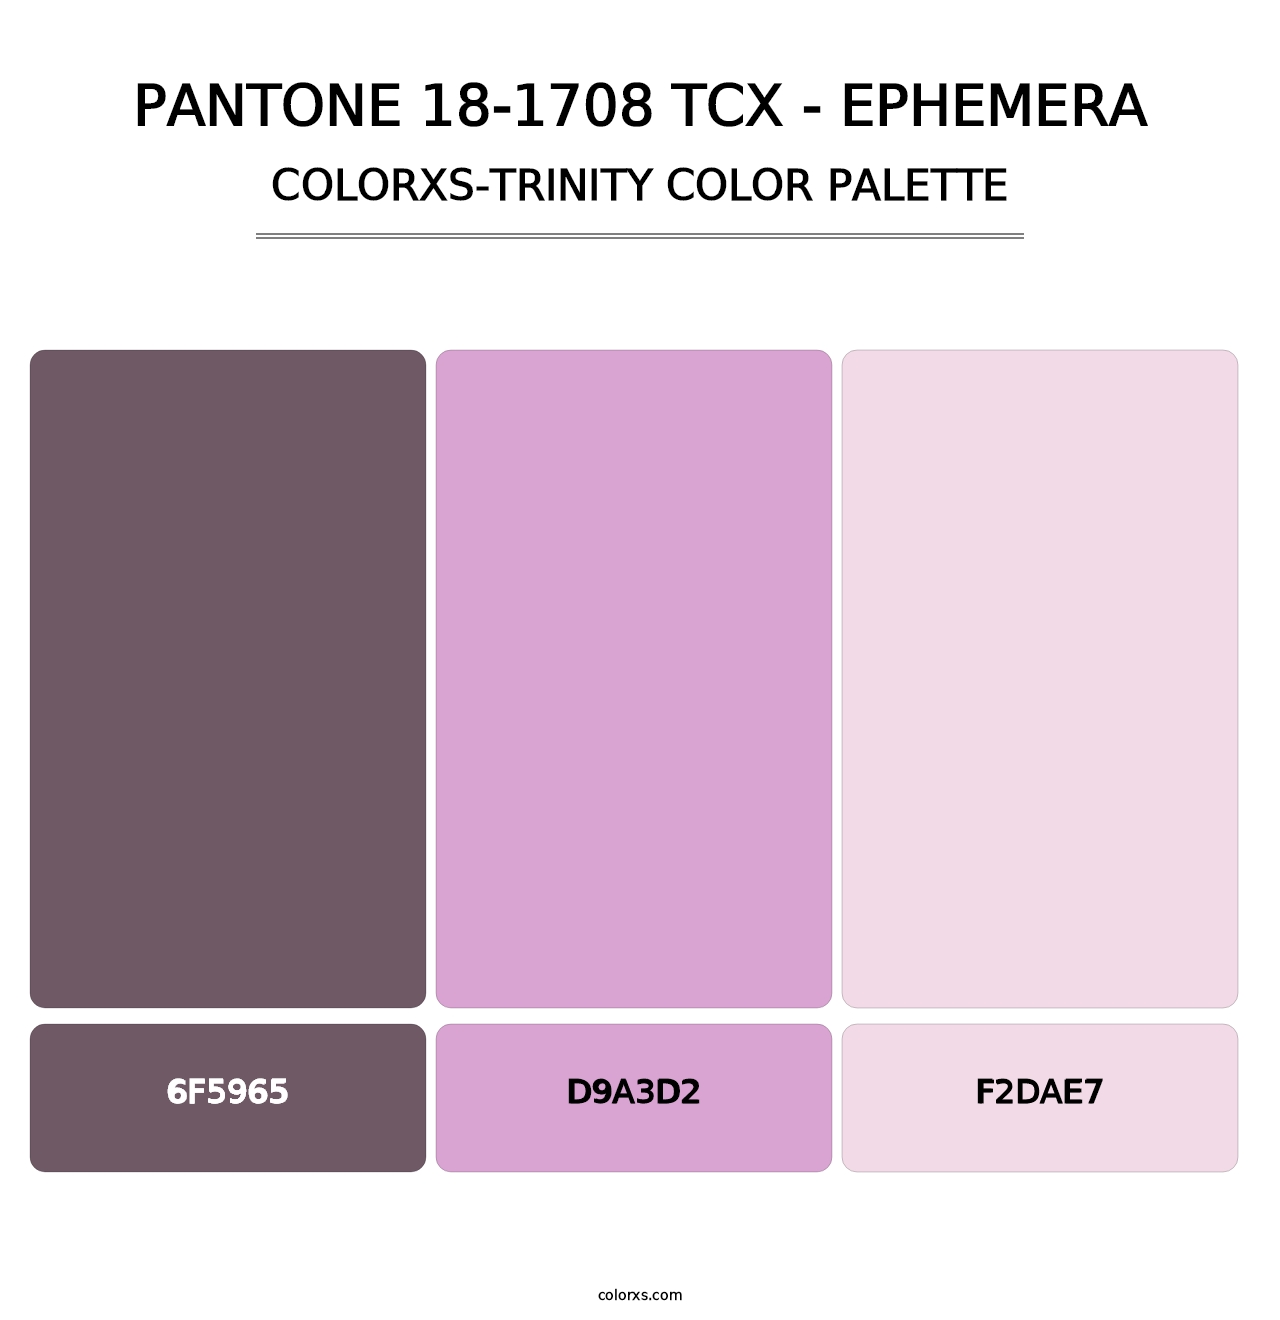 PANTONE 18-1708 TCX - Ephemera - Colorxs Trinity Palette